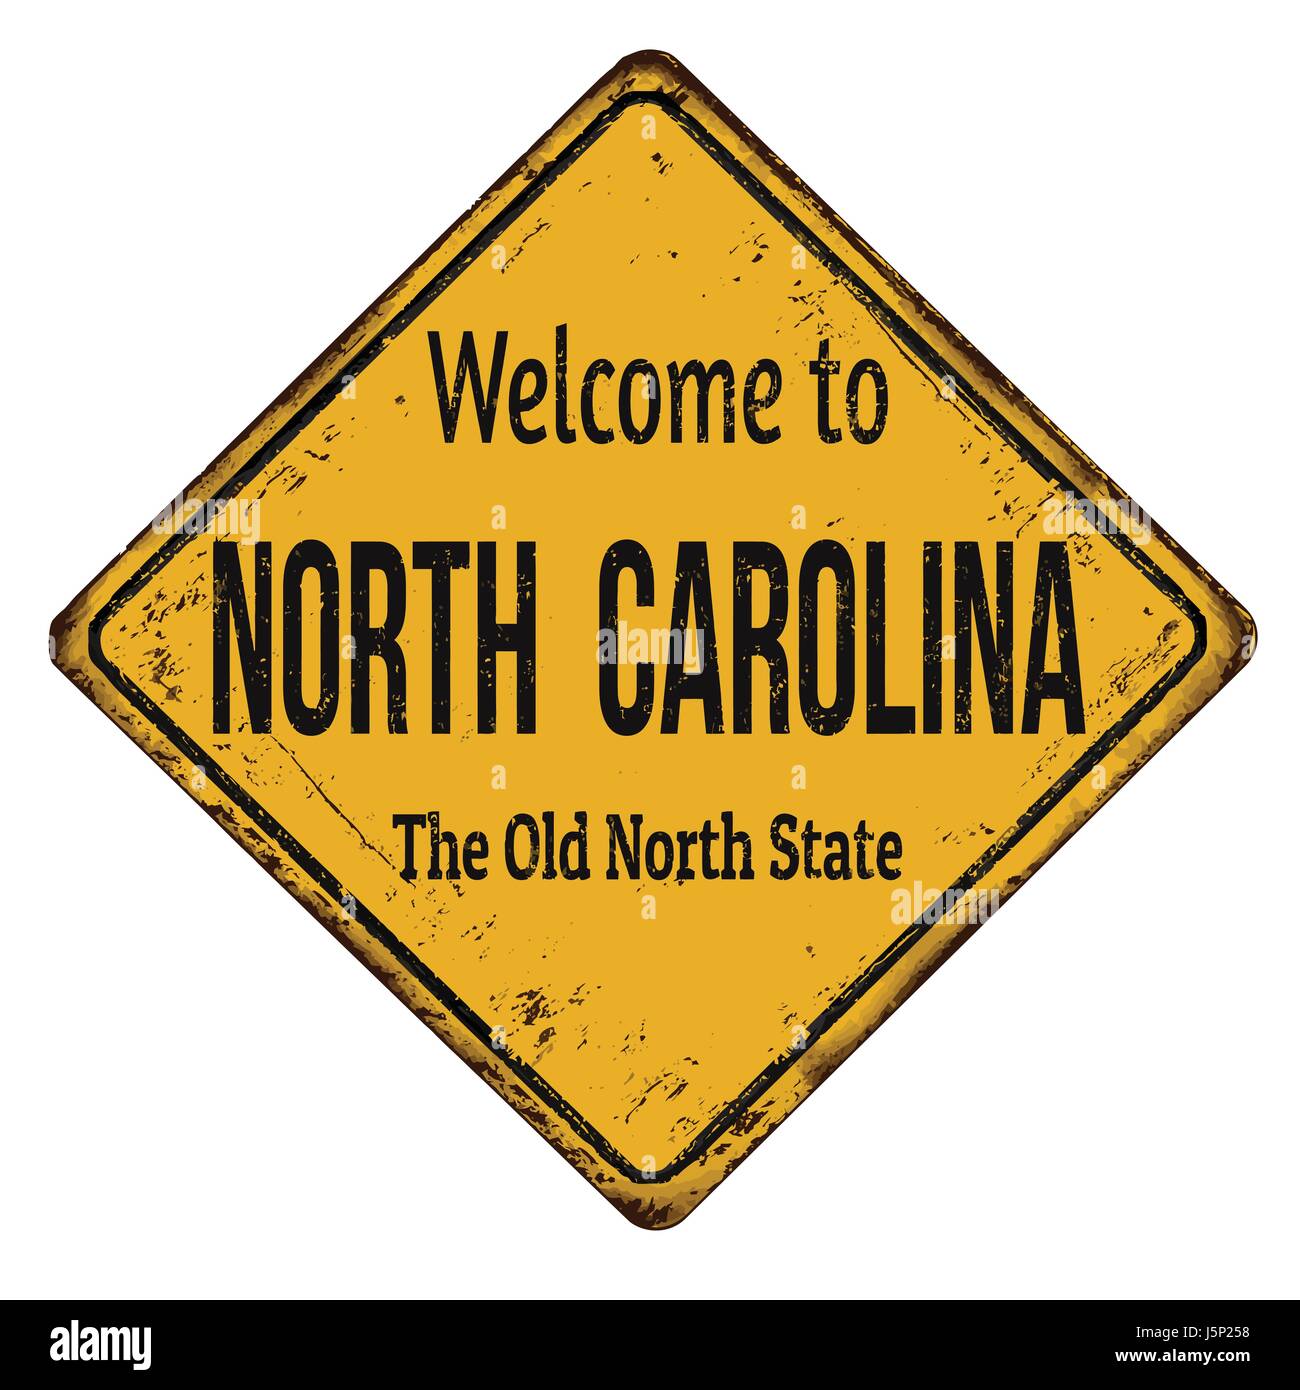 Willkommen in North Carolina Vintage rostigen Metall Zeichen auf einem weißen Hintergrund, Vektor-illustration Stock Vektor